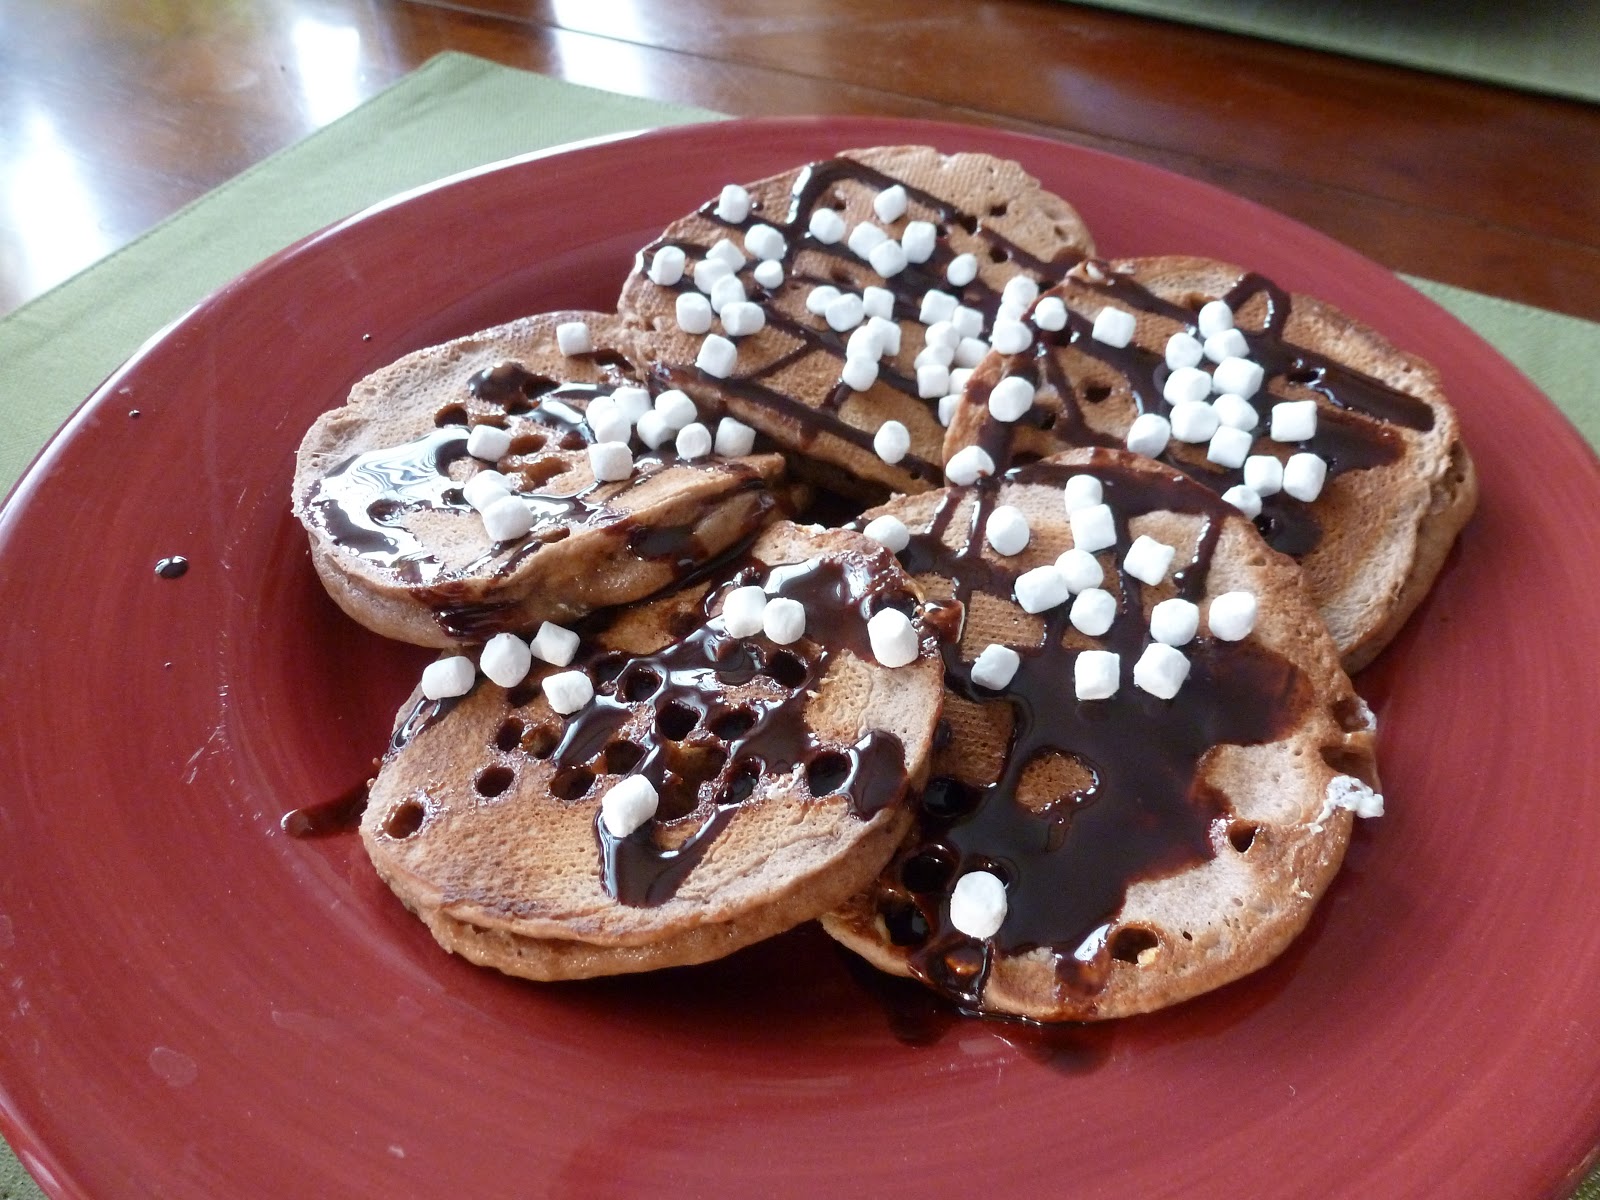 52 pancakes in 52 weeks: Week 12 - Hot Chocolate Pancakes